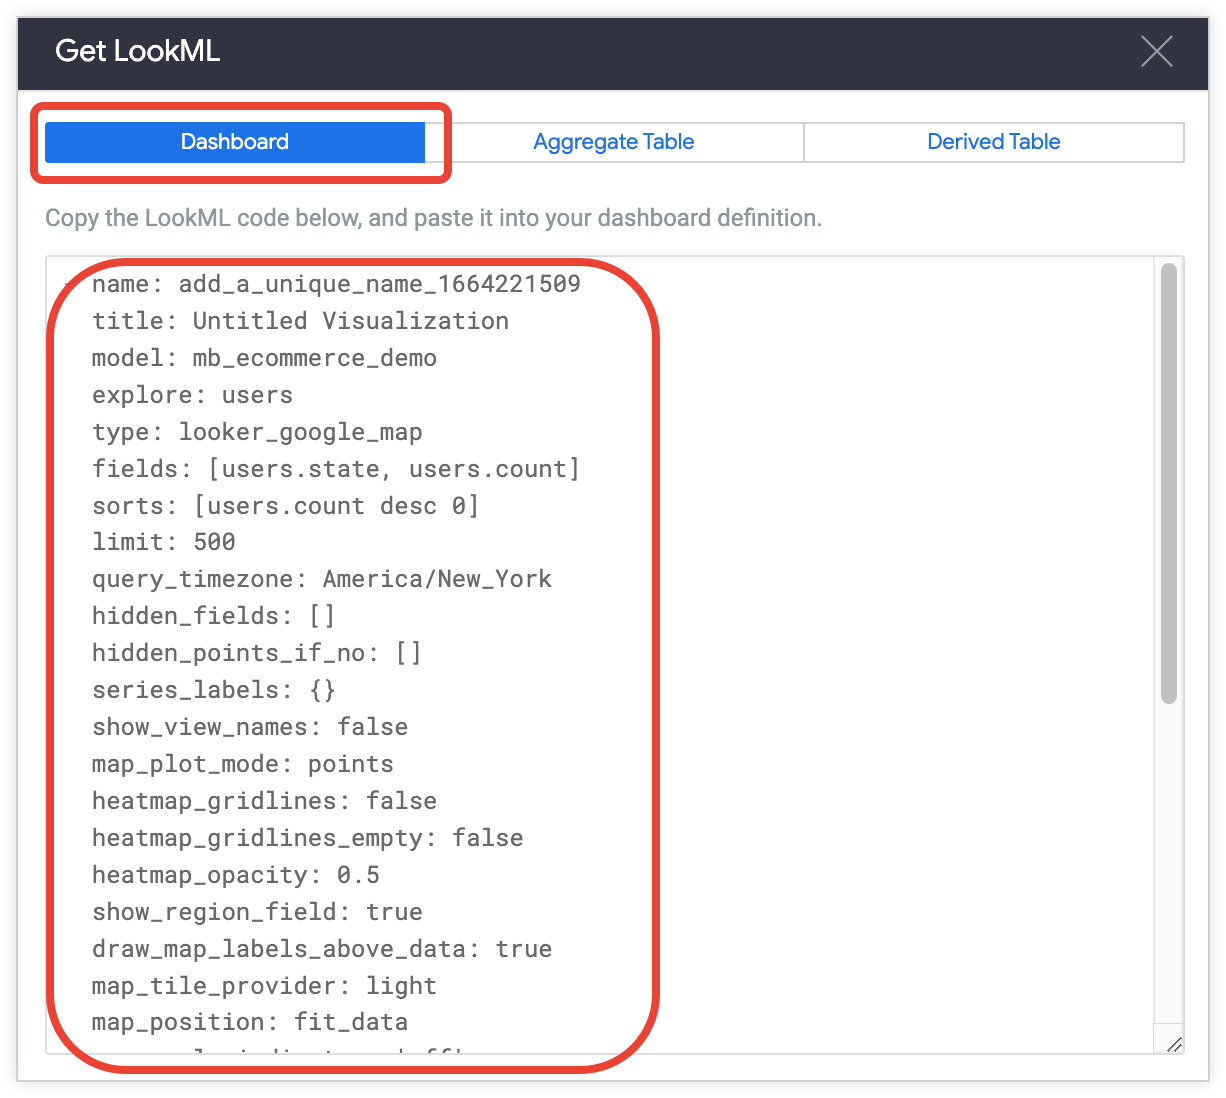 在 Get LookML 窗口顶部，有“信息中心”、“汇总表格”和“派生表格 LookML”标签页。